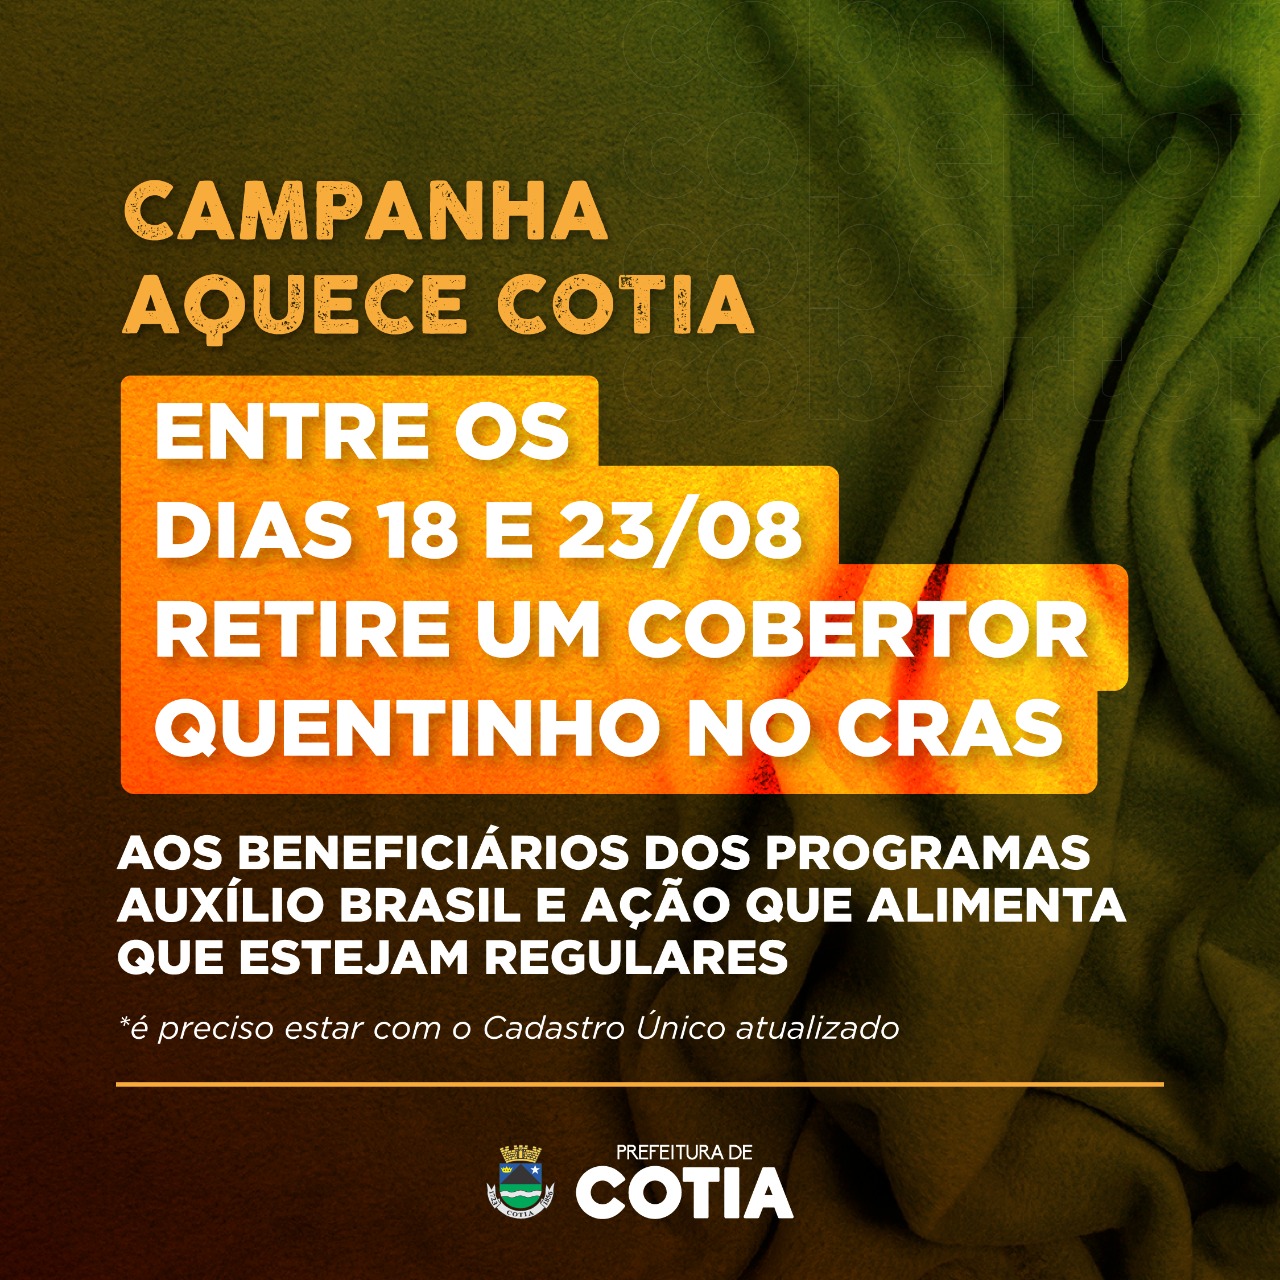 Campanha Aquece Cotia: SDS vai entregar um cobertor para beneficiários do Auxílio Brasil e Ação que Alimenta